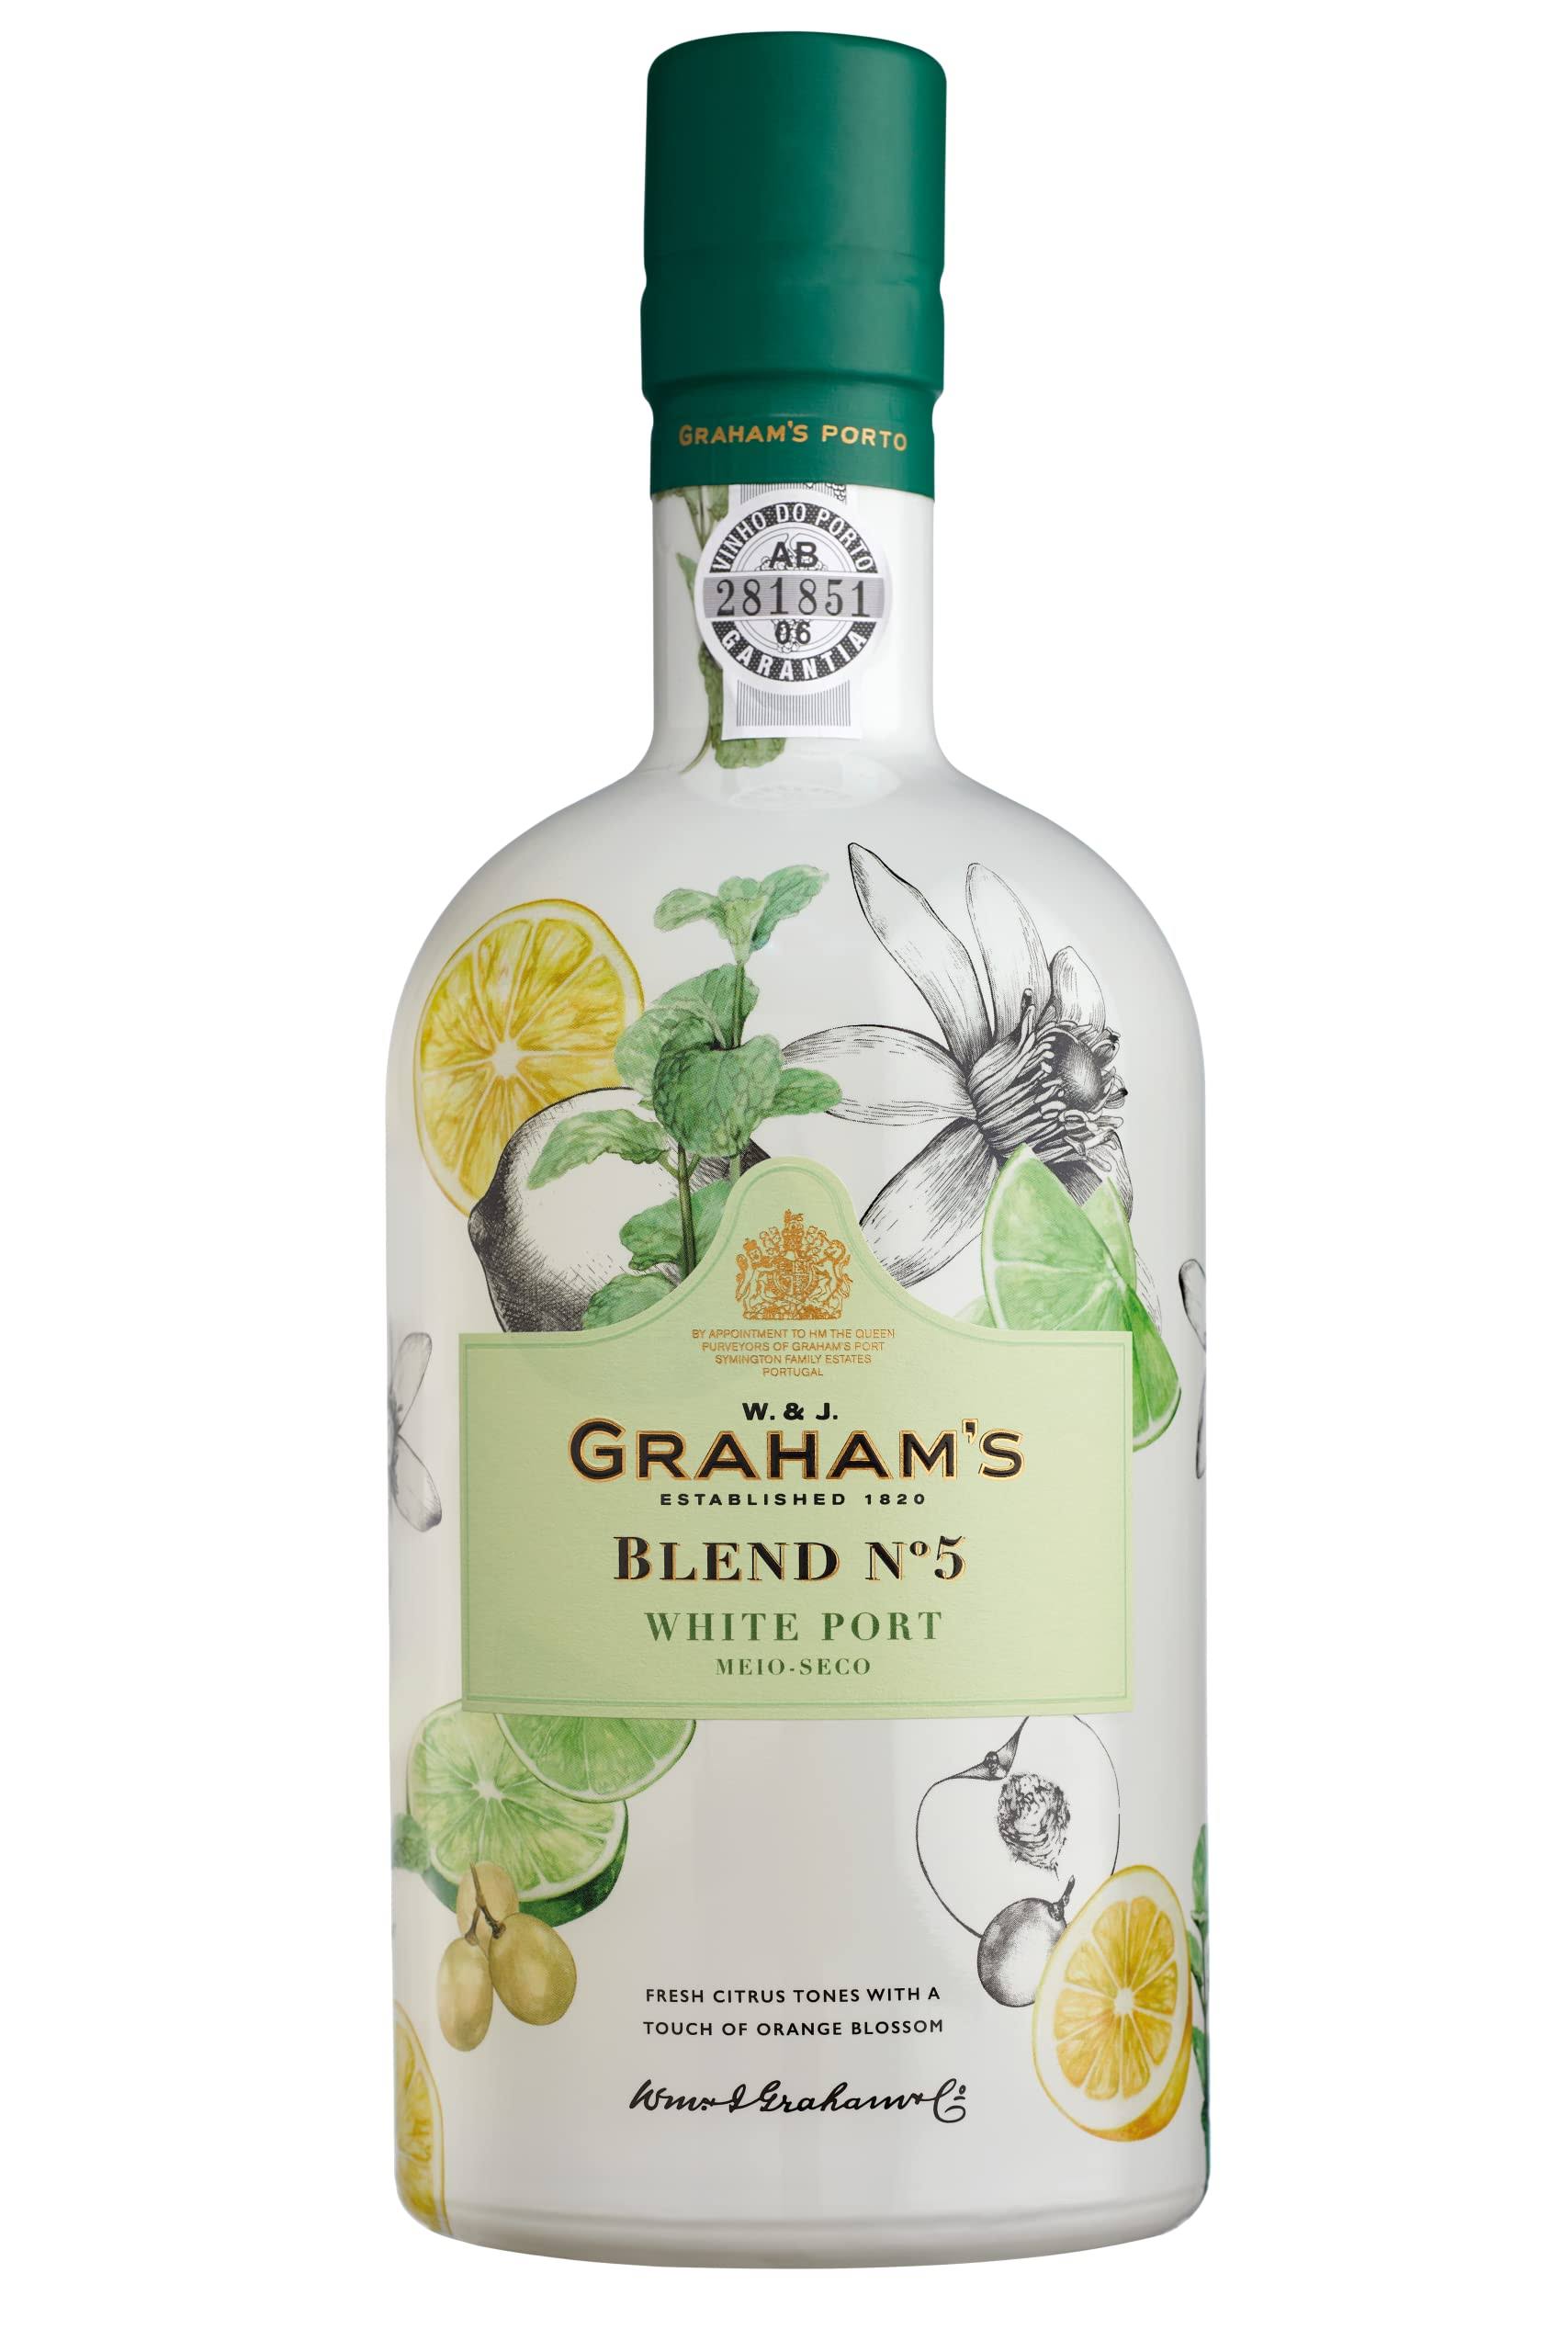 Graham's - Grahams Blend no5 White Port